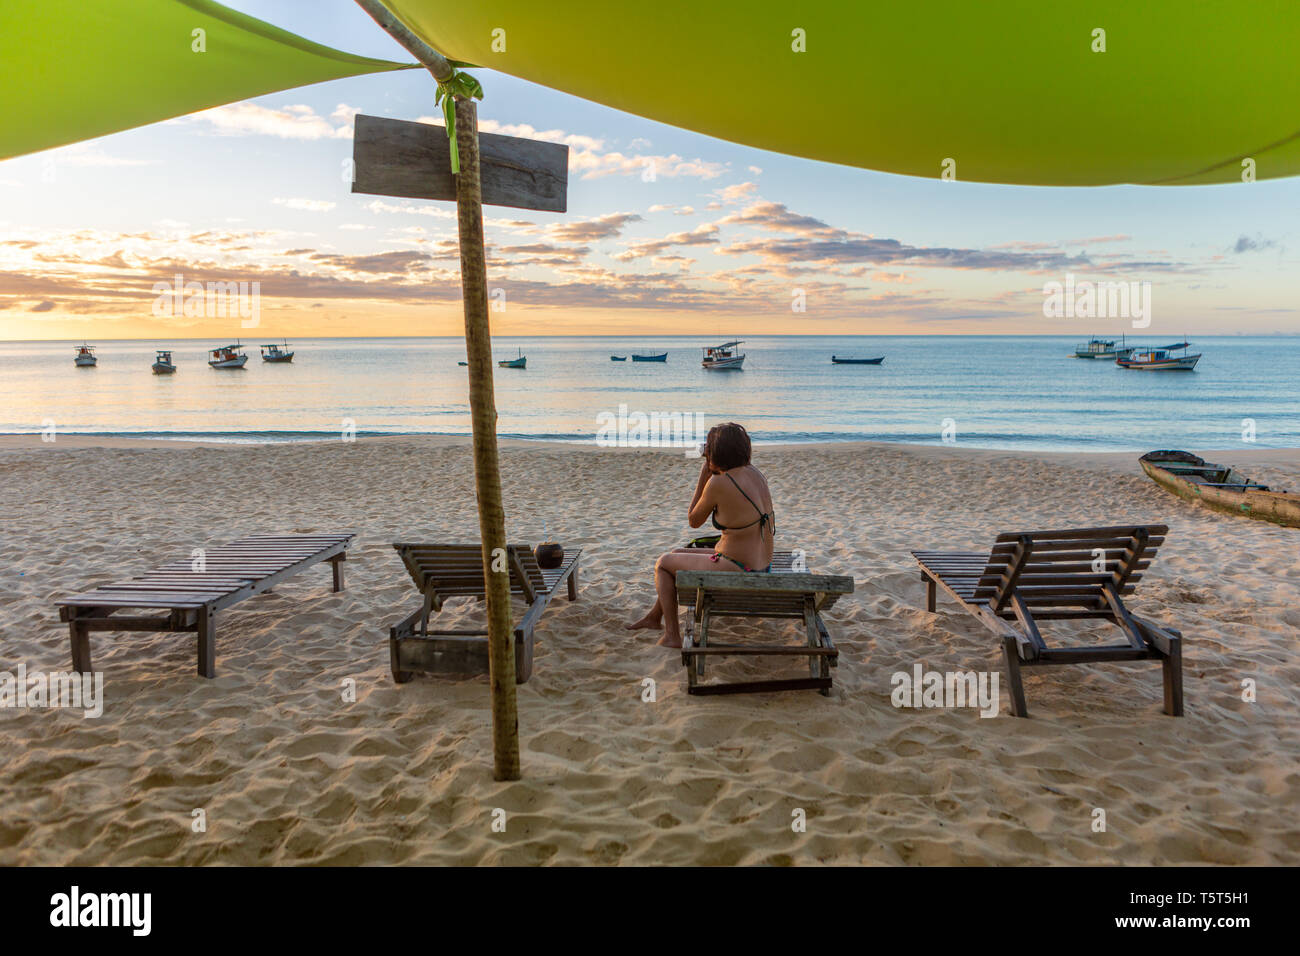 Bella mujer fotografiando atardecer en la playa idílica sentados con el mar y los barcos de fondo. La paz y la mente conceptual. Bahia, Brasil. Foto de stock